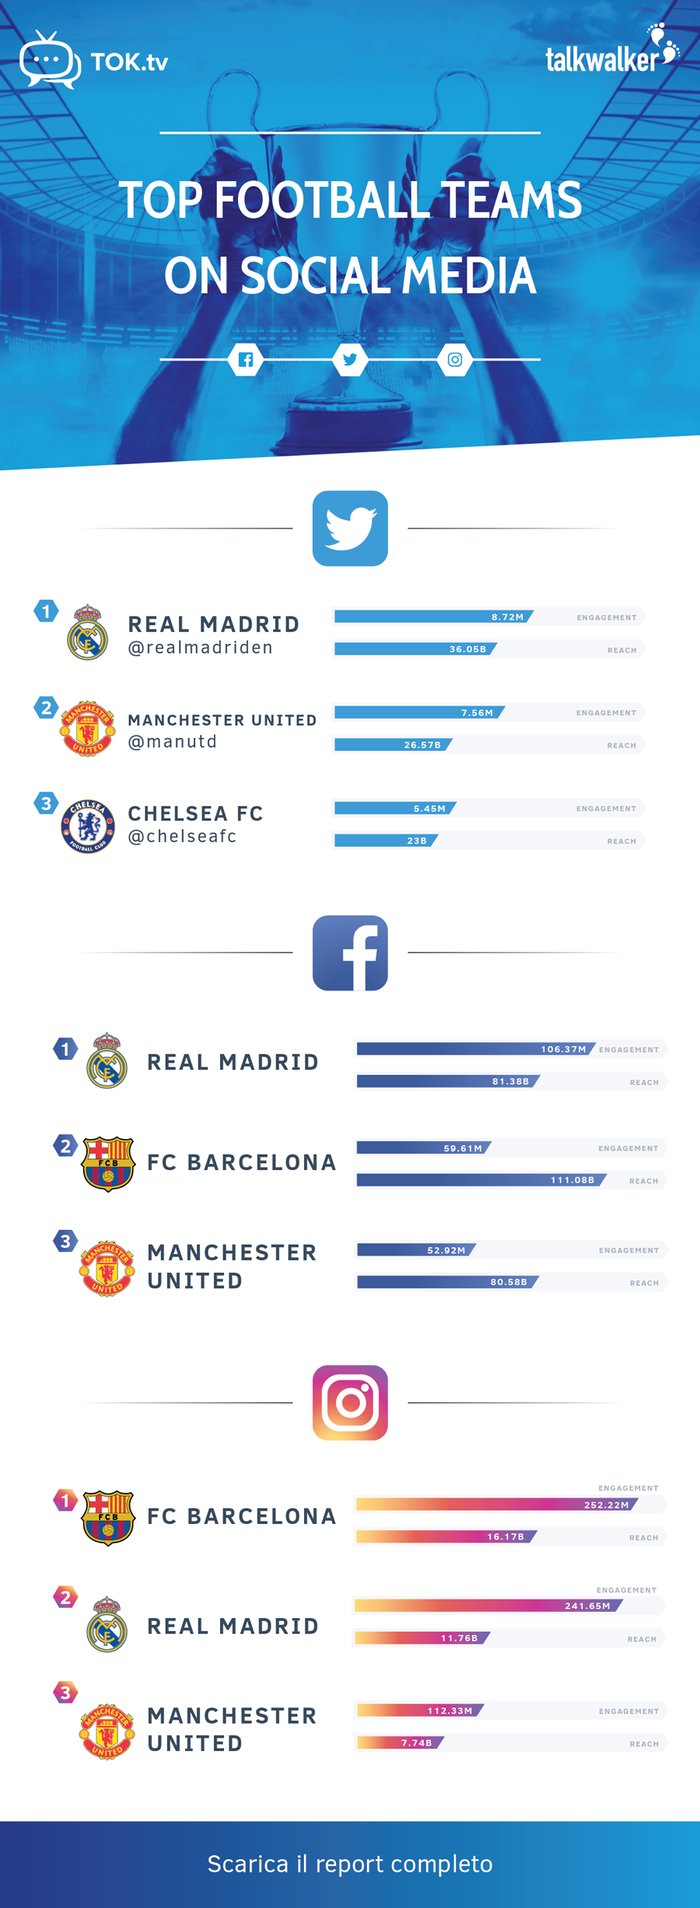 Football teams on social media